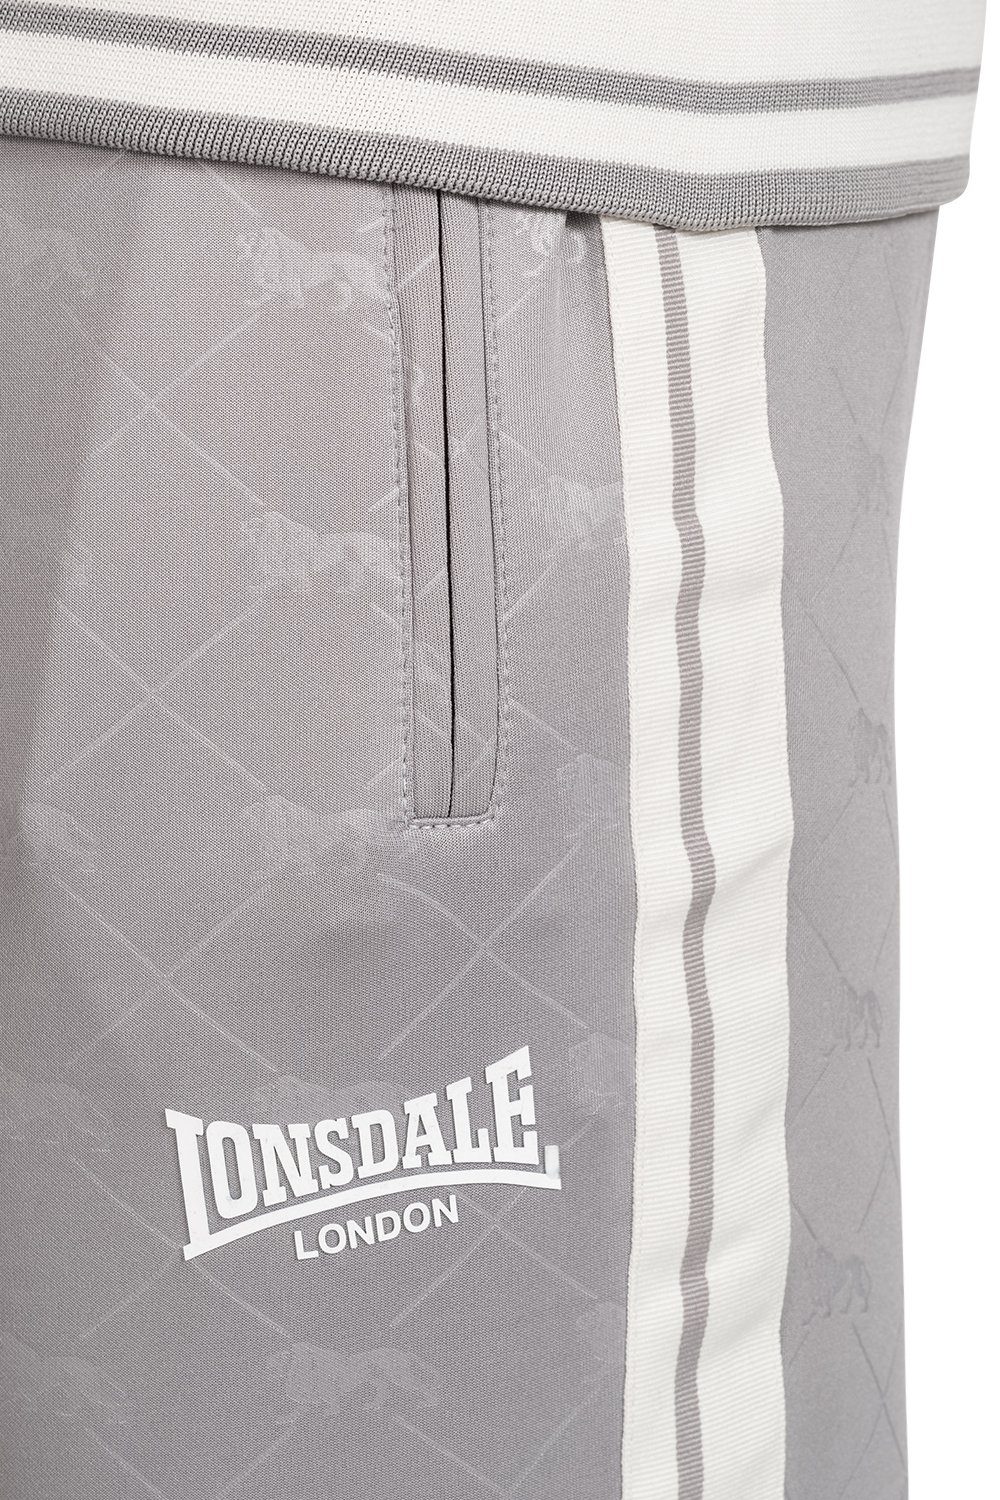 ASHWELL Grey/White Trainingsanzug Lonsdale